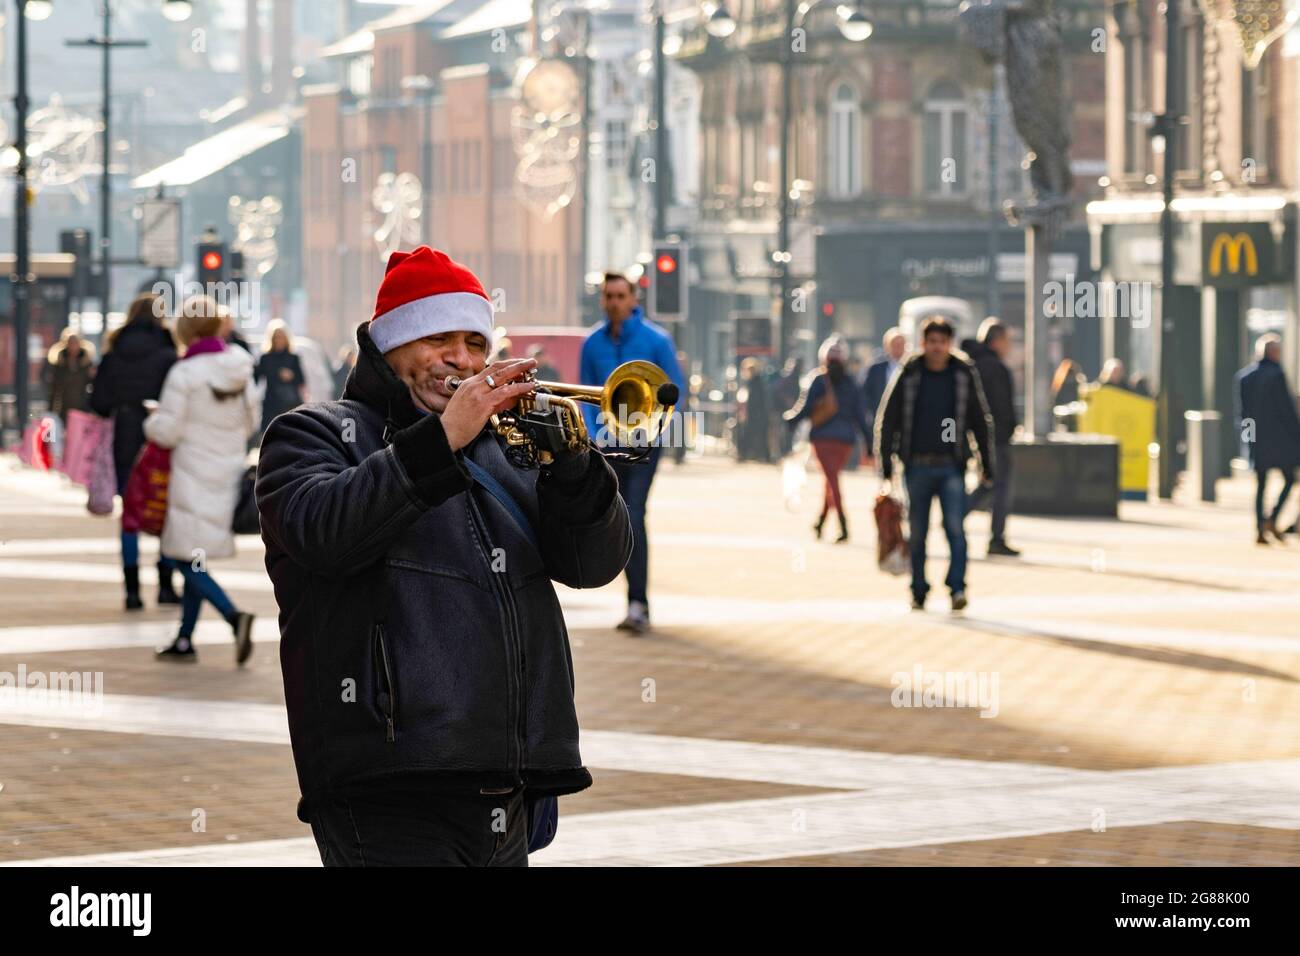 In Leeds, West Yorkshire, England, ist ein Trompetenspieler, der einen Weihnachtsmann trägt, in einem Einkaufszentrum zu sehen. Stockfoto